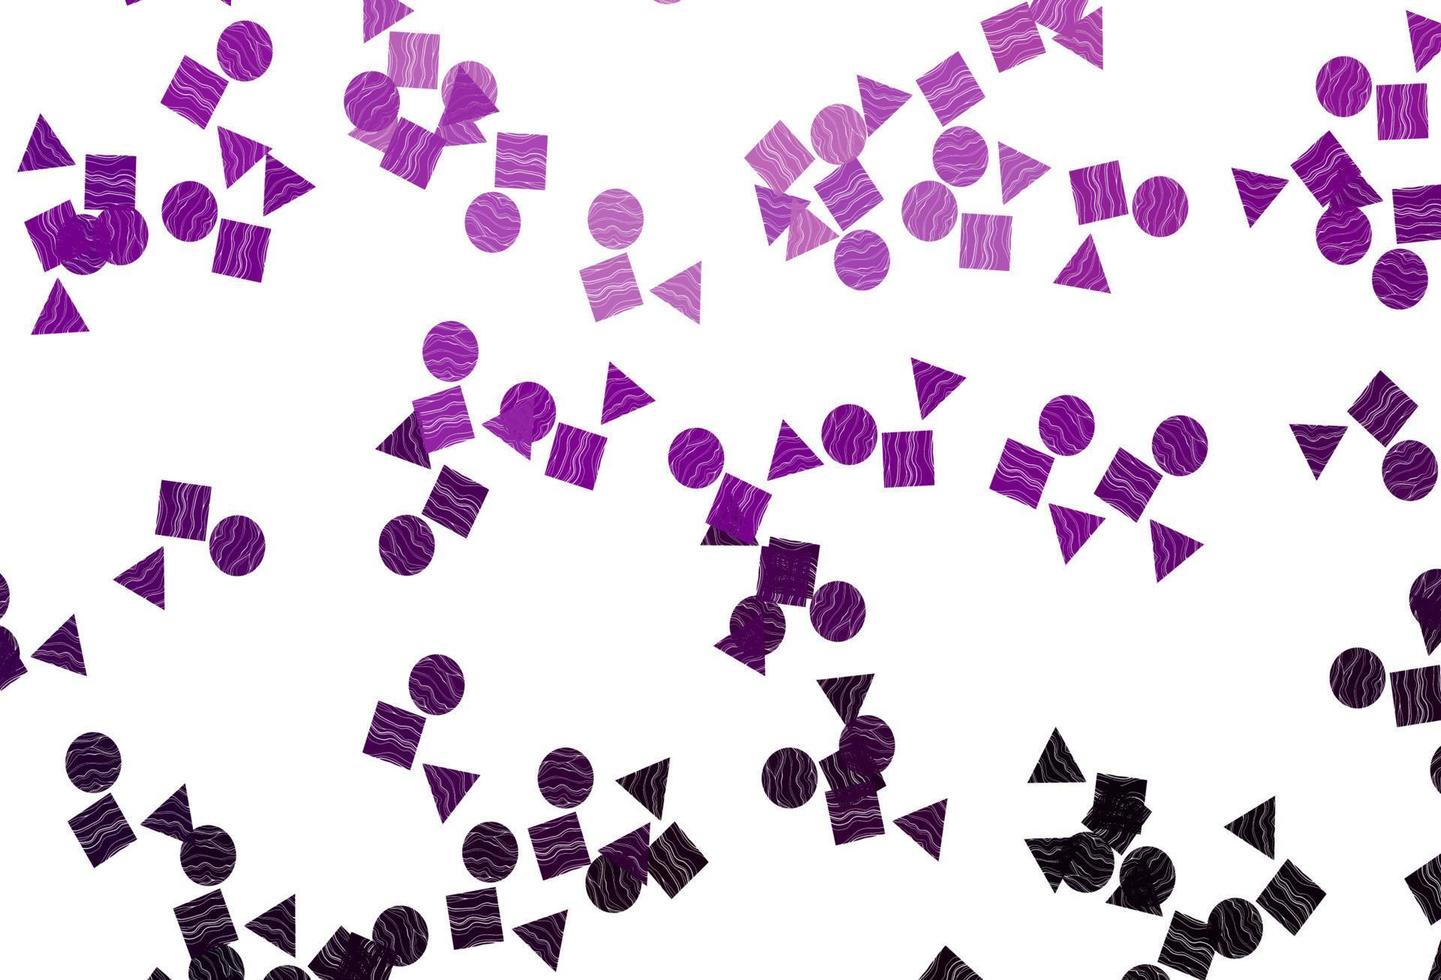 Telón de fondo de vector púrpura claro con líneas, círculos, rombos.